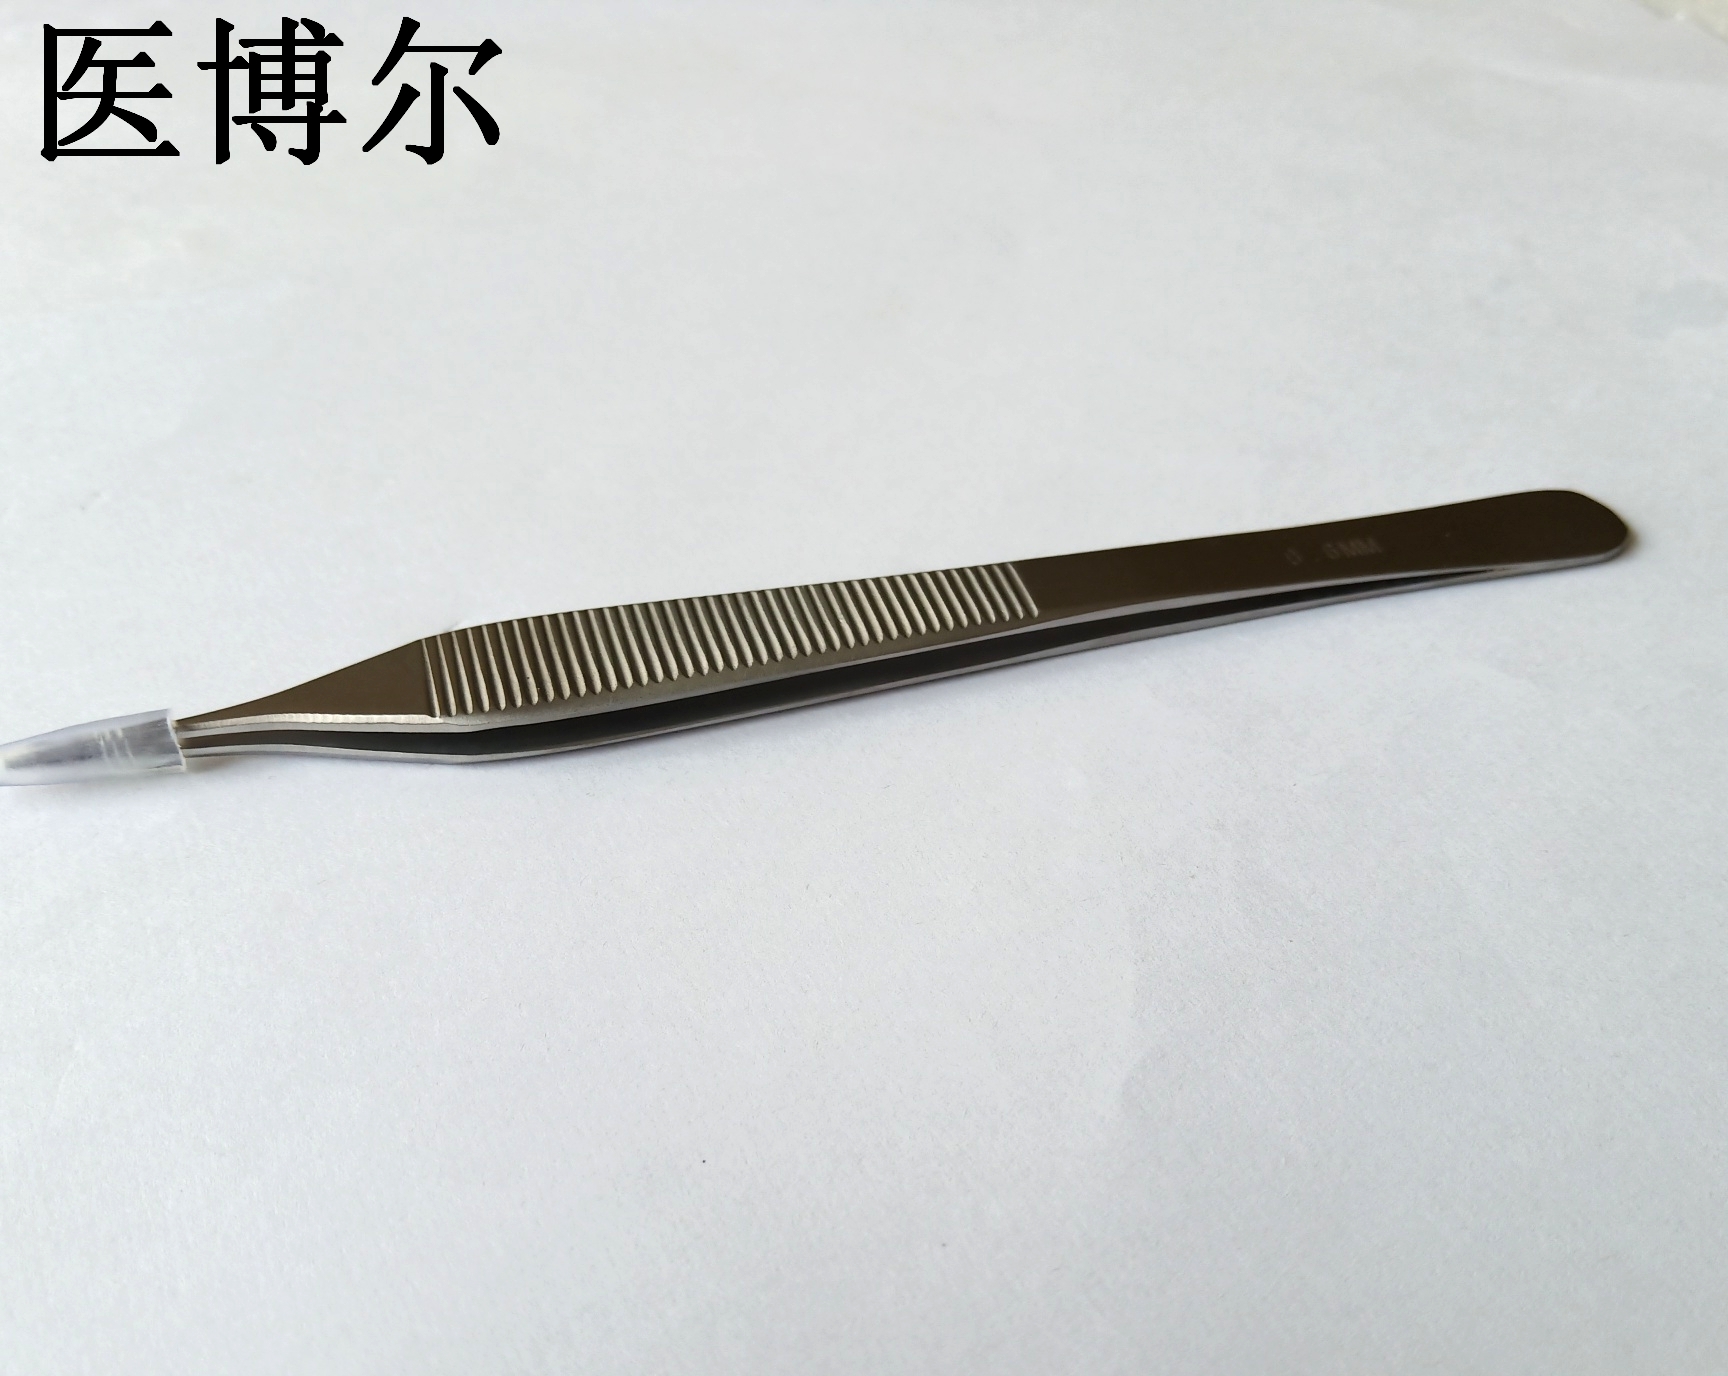 14cm整形镊0 (6)_看图王.jpg